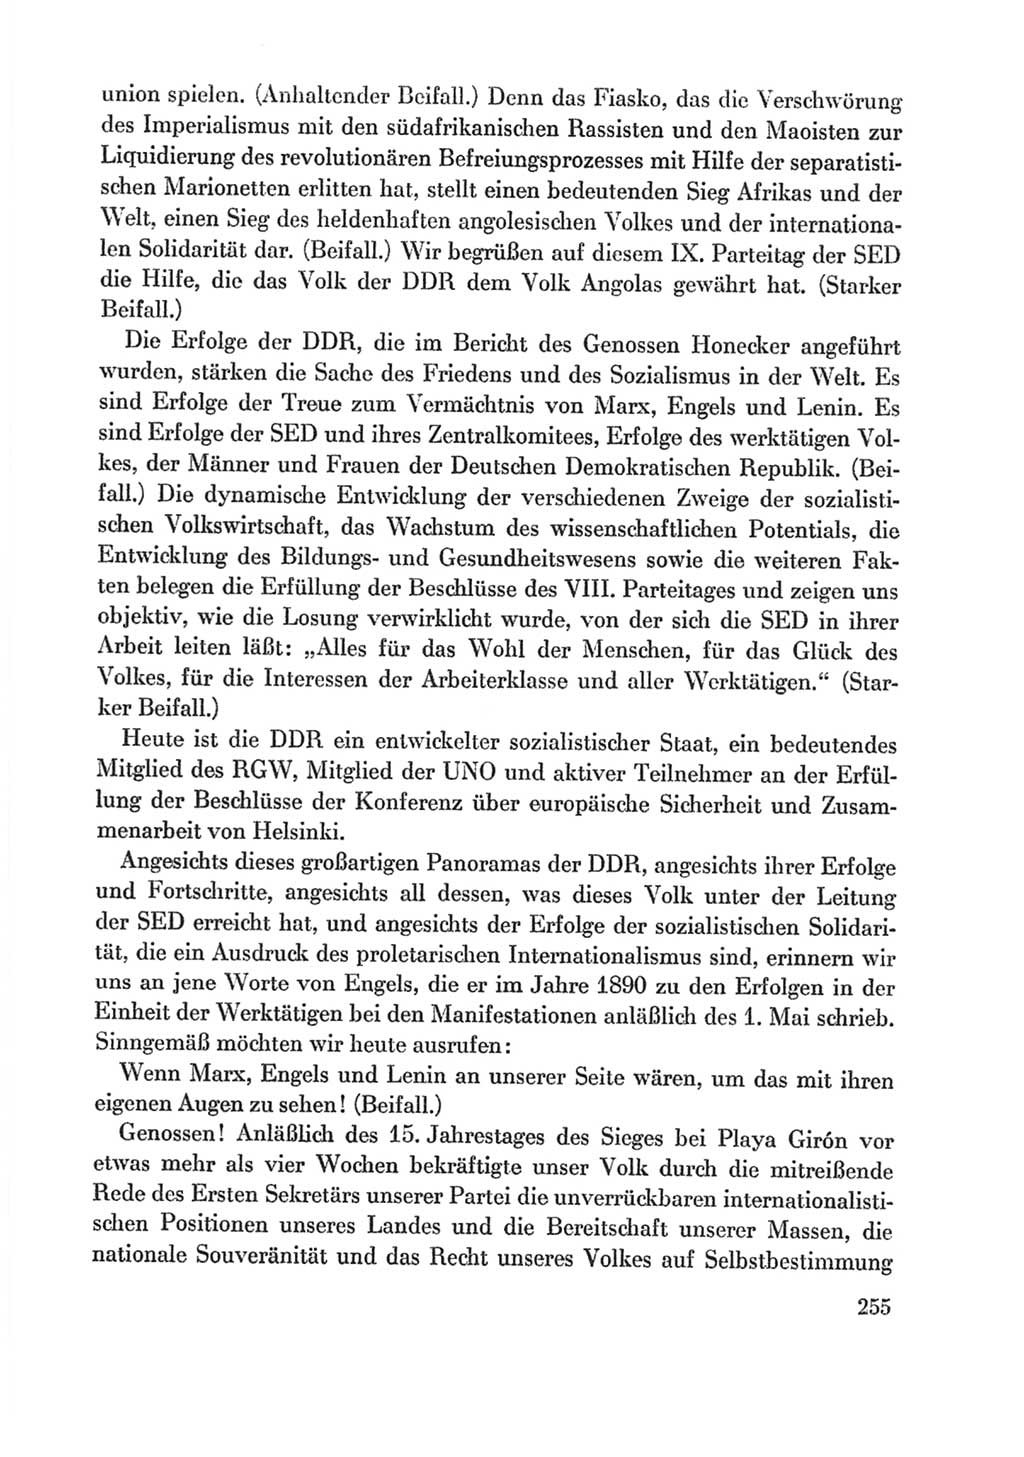 Protokoll der Verhandlungen des Ⅸ. Parteitages der Sozialistischen Einheitspartei Deutschlands (SED) [Deutsche Demokratische Republik (DDR)] 1976, Band 1, Seite 255 (Prot. Verh. Ⅸ. PT SED DDR 1976, Bd. 1, S. 255)